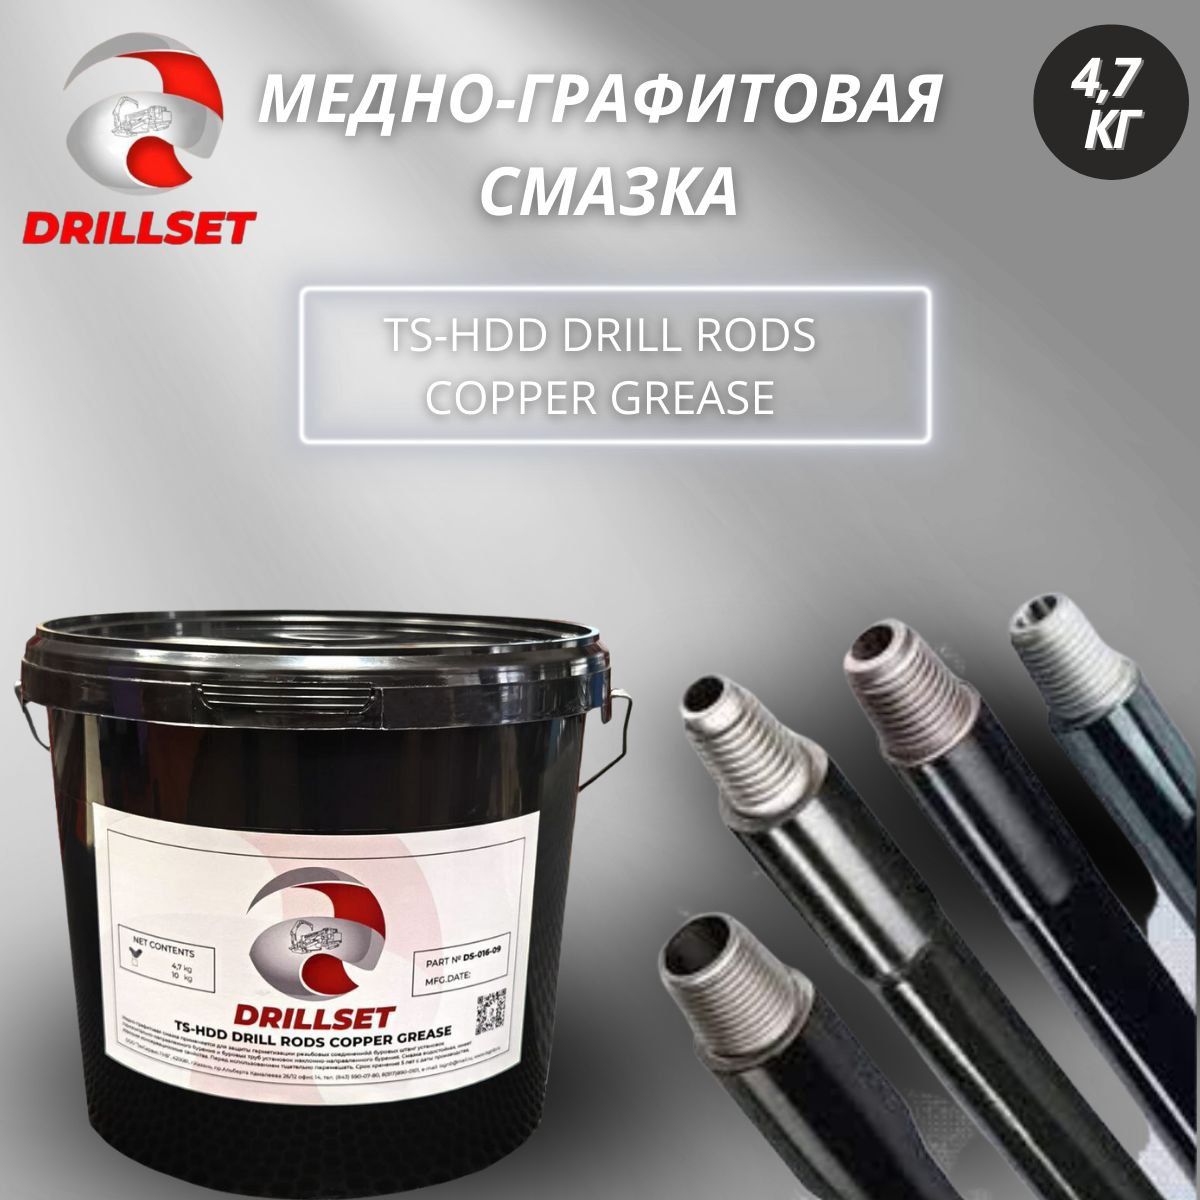 Медно-графитовая смазка DRILLSET TS HDD 4,7 кг для защиты резьбы буровых штанг ГНБ